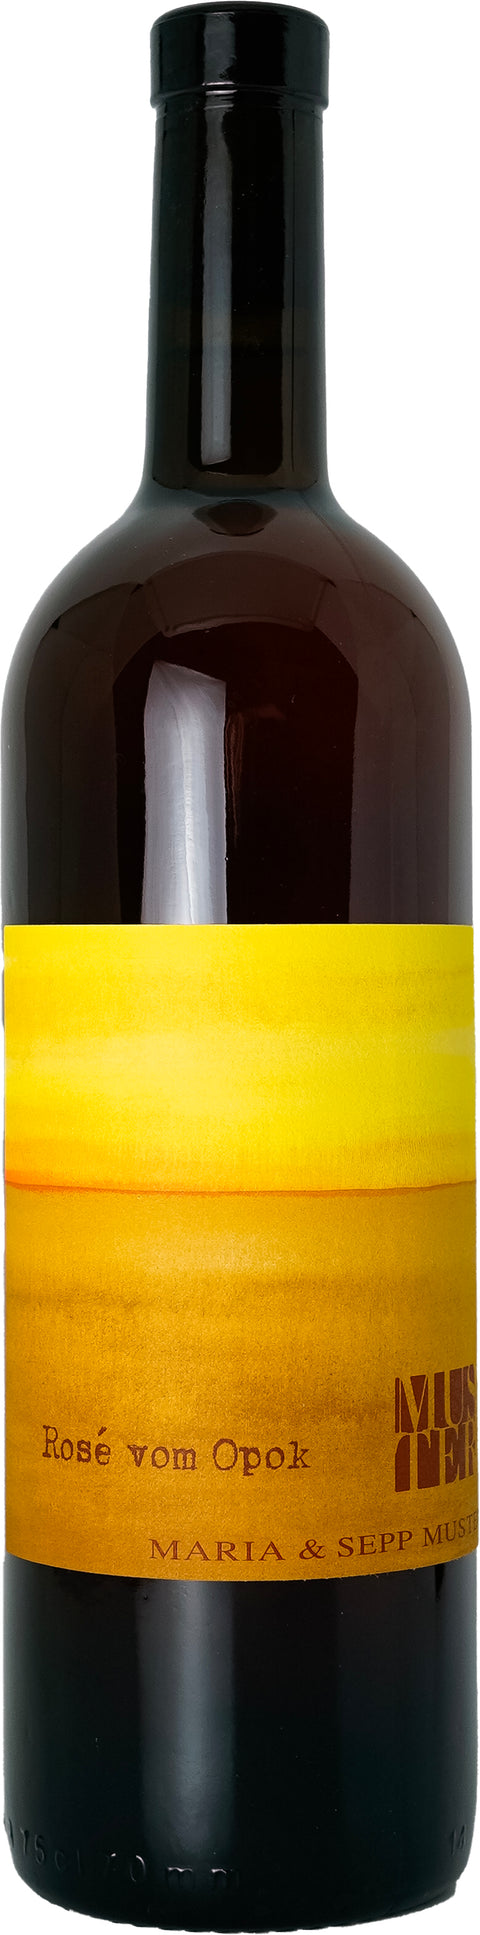 Rosé vom Opok - Weingut Muster - 2020